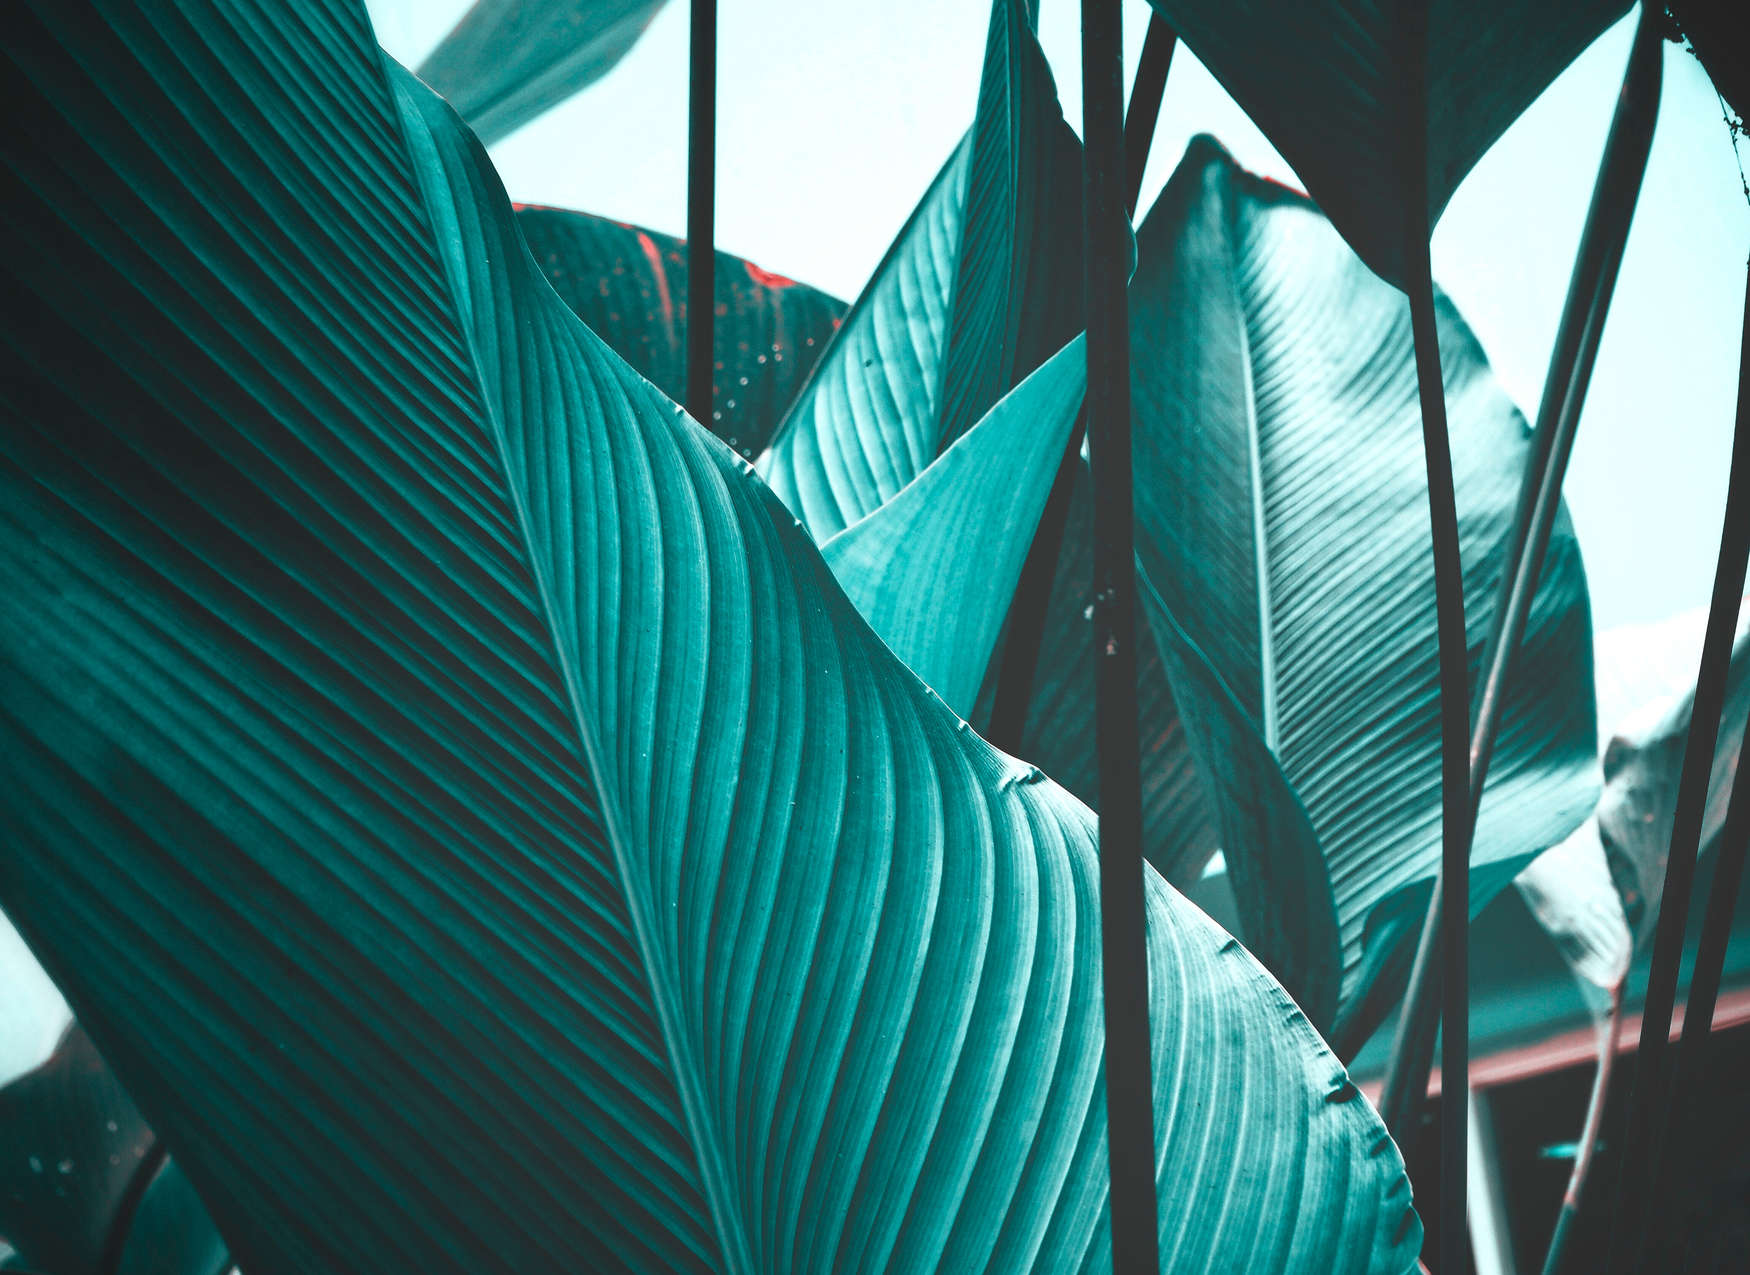             Digital behang bladeren tropisch turquoise - blauw, zwart
        